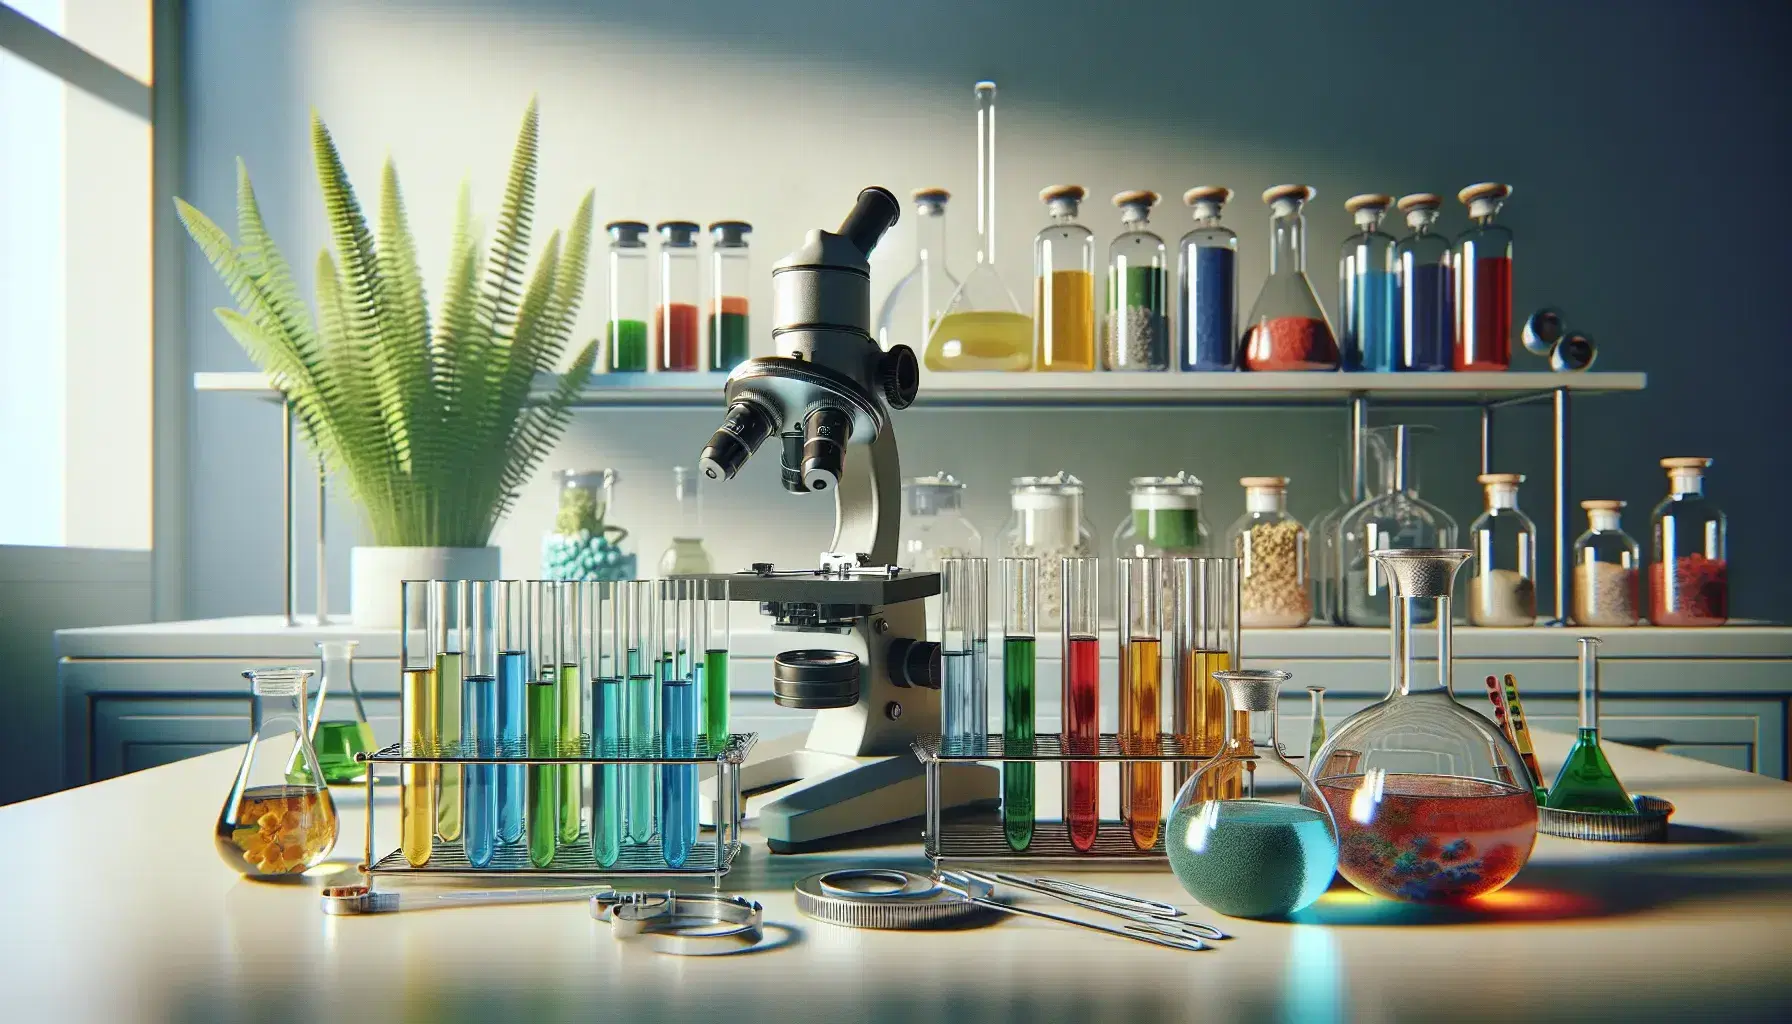 Laboratorio de biología con tubos de ensayo de colores en soporte metálico, microscopio óptico y estantería con frascos de sustancias variadas, junto a planta verde.